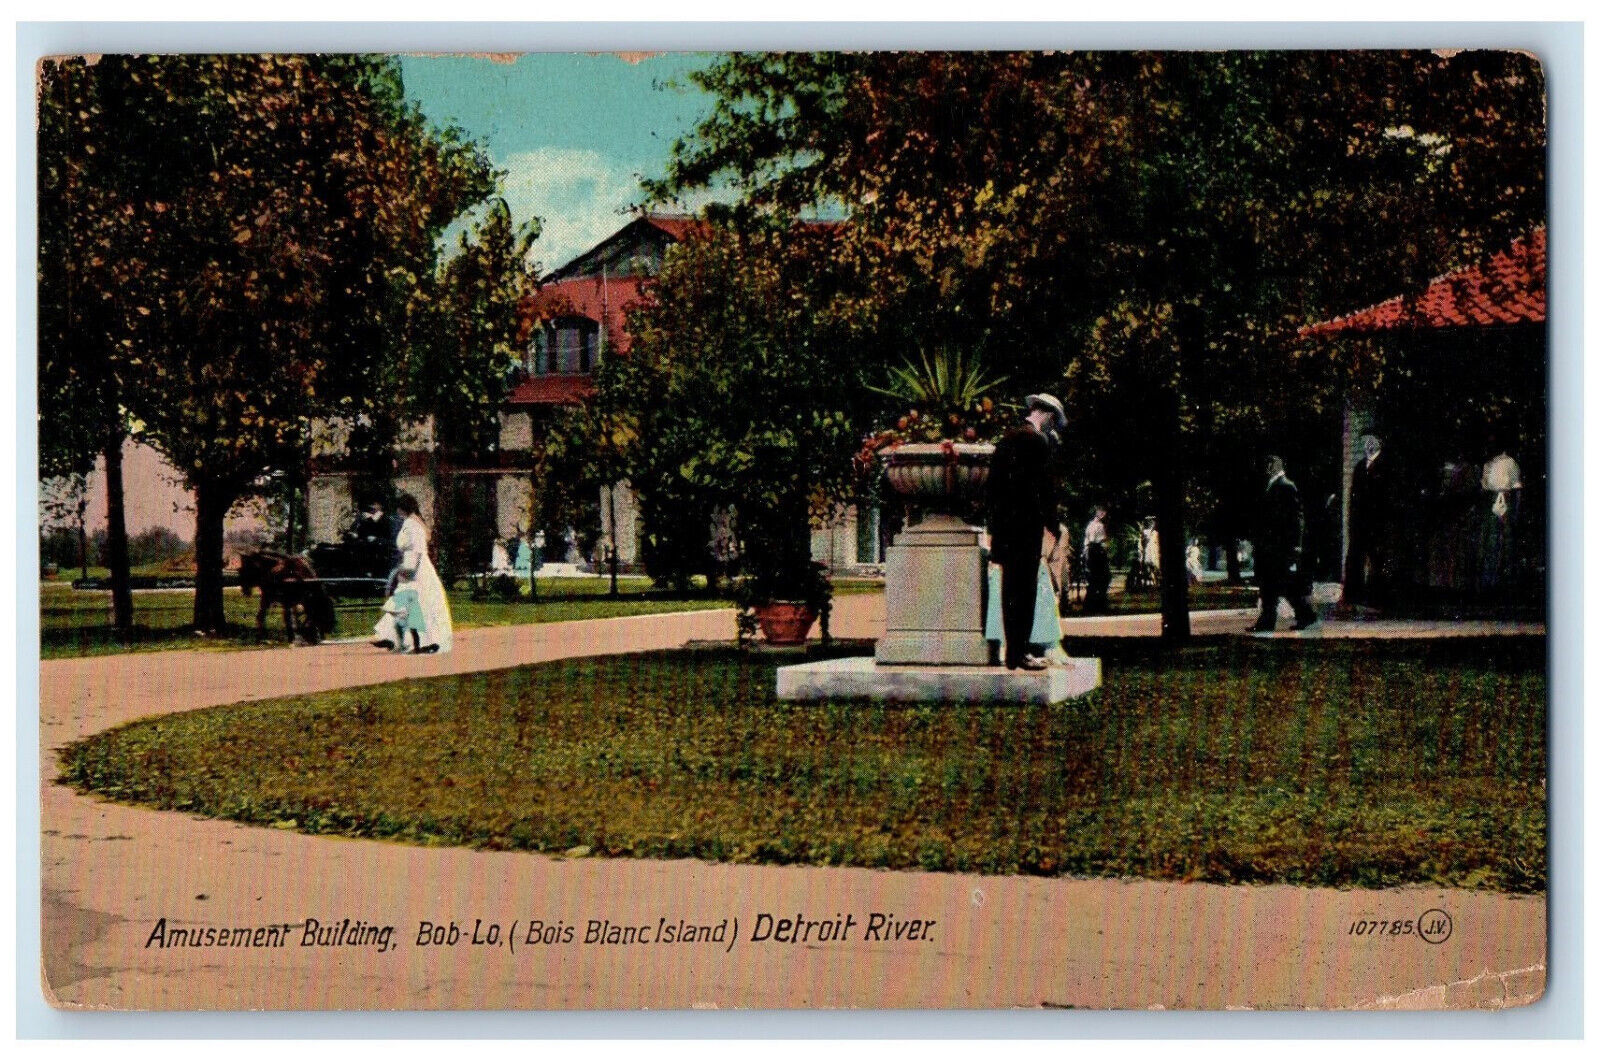 1916 Amusement Building Bob-Lo (Bois Blanc Island) Detroit River Posted Postcard